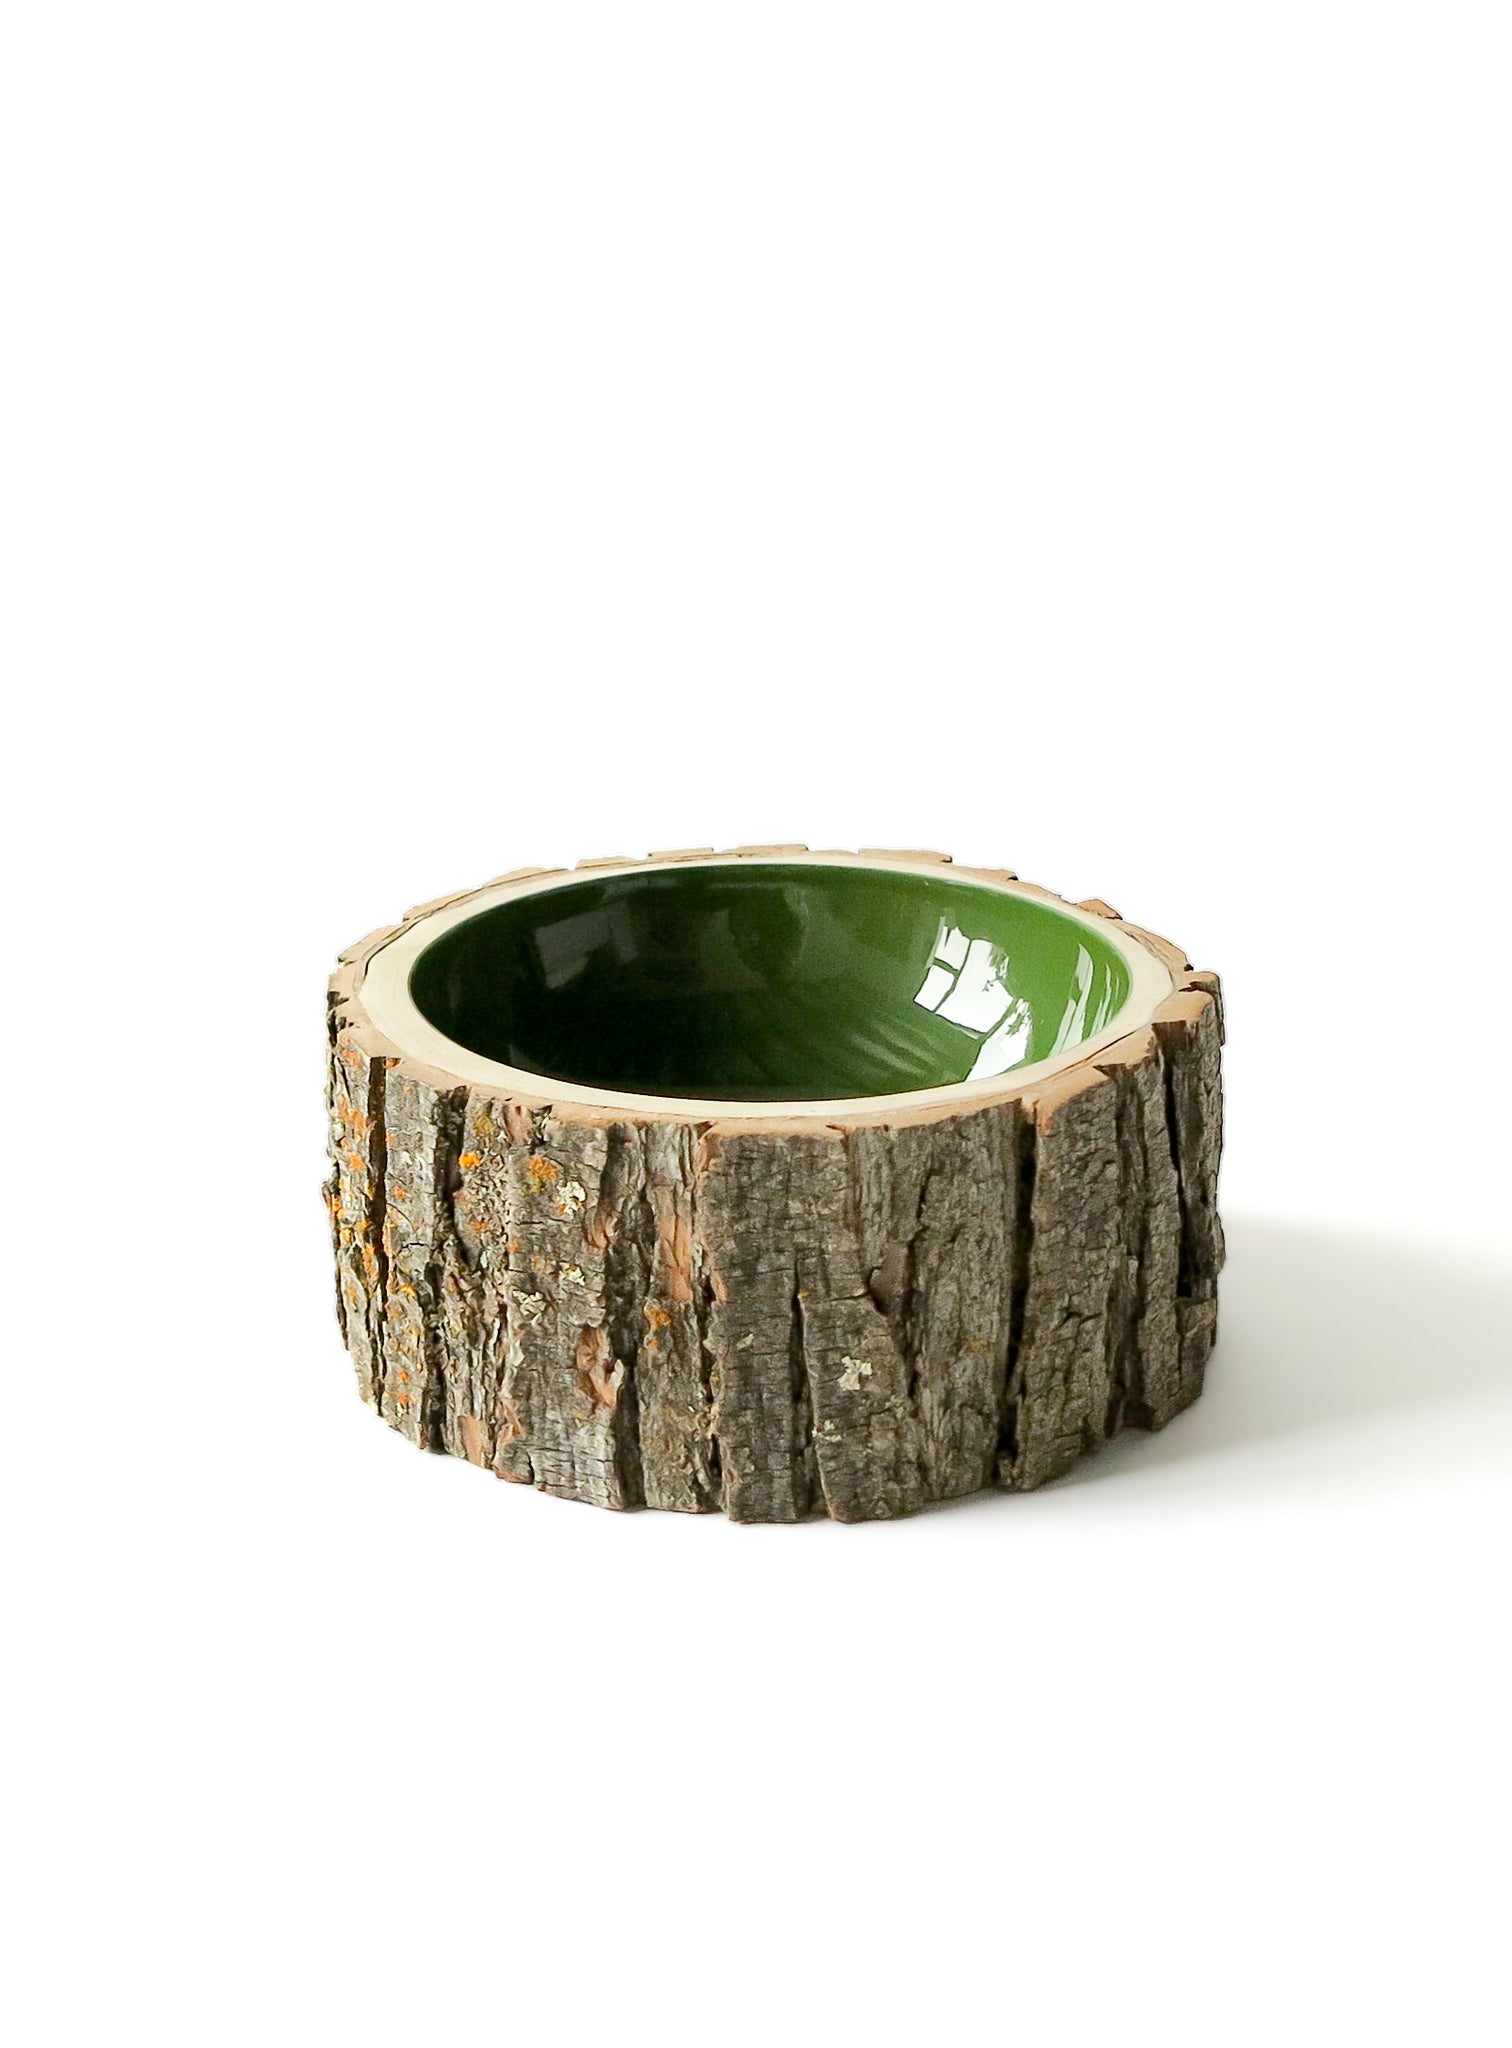 Log Bowl | Size 6 | Olive